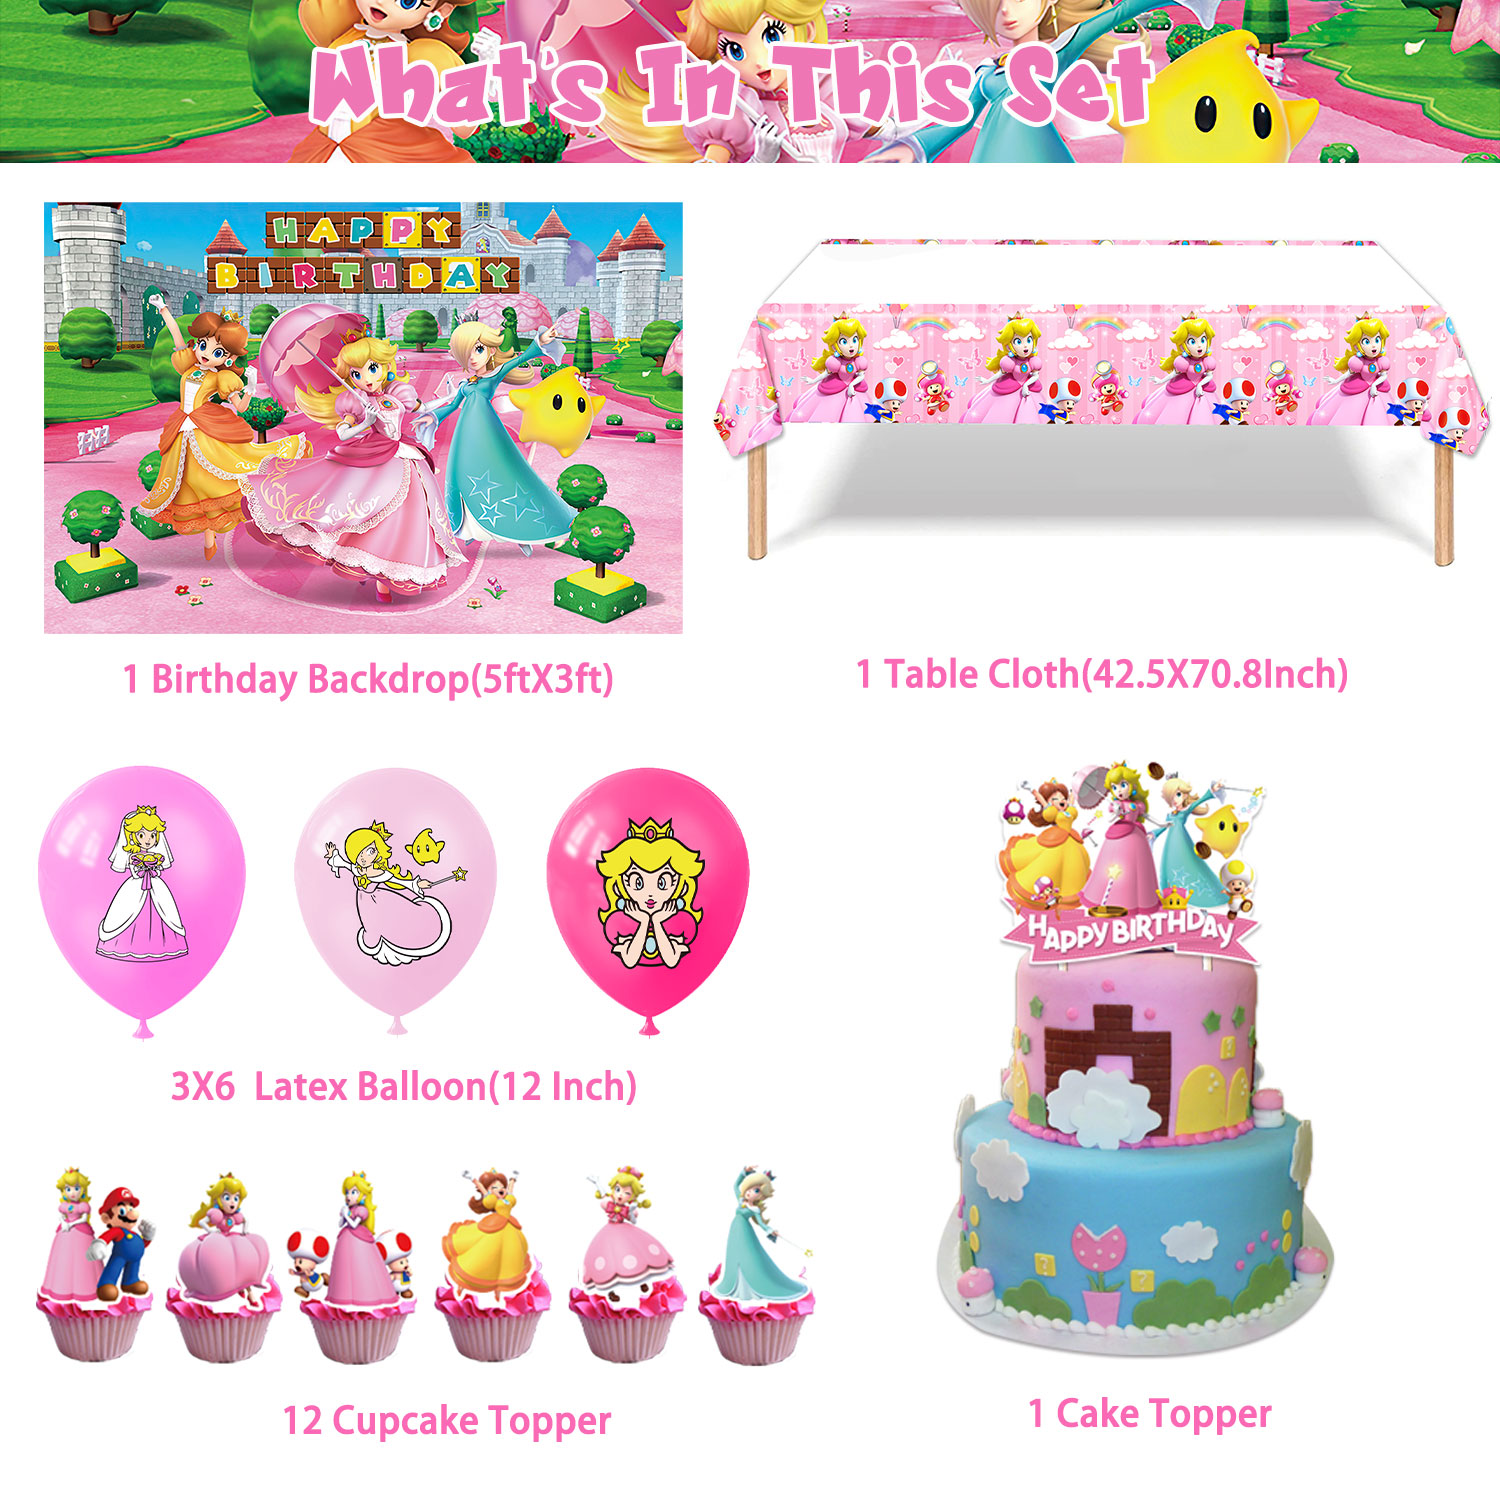 Princesa Peach  Princesa peach, Decoracion de princesa, Fiesta princesa  peach